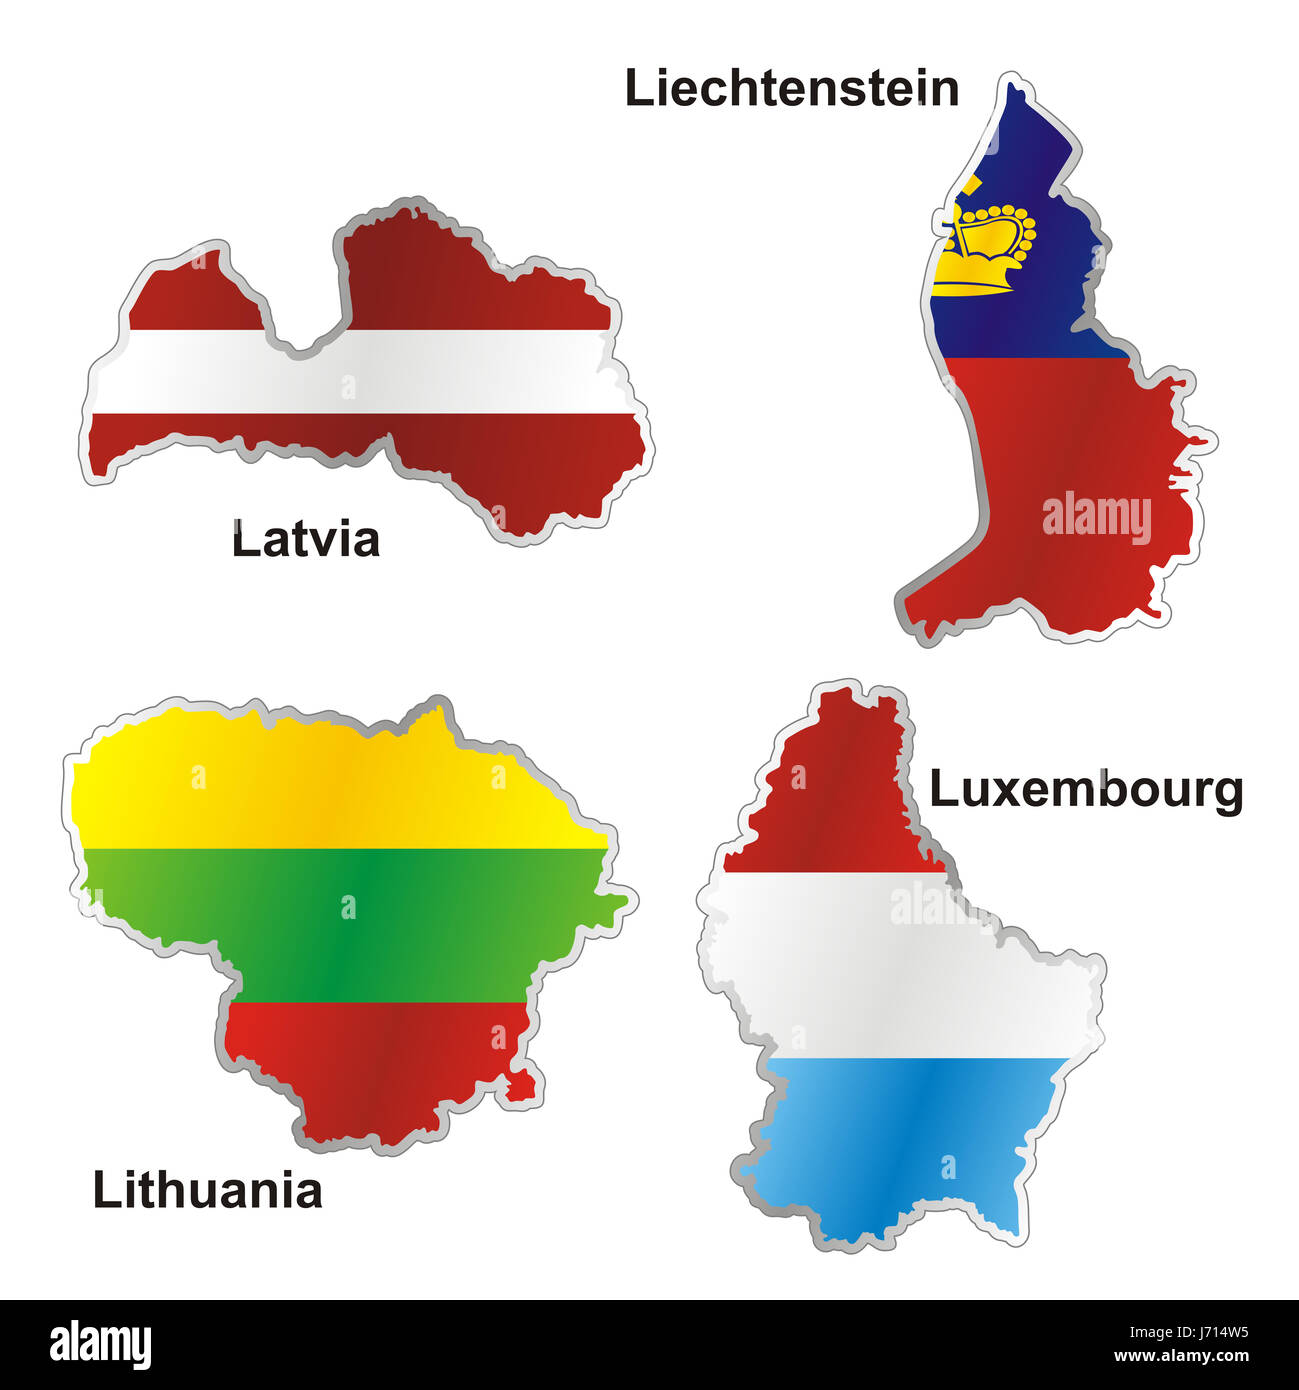 Flag Latvia Lithuania Liechtenstein Luxembourg Map Atlas Map Of